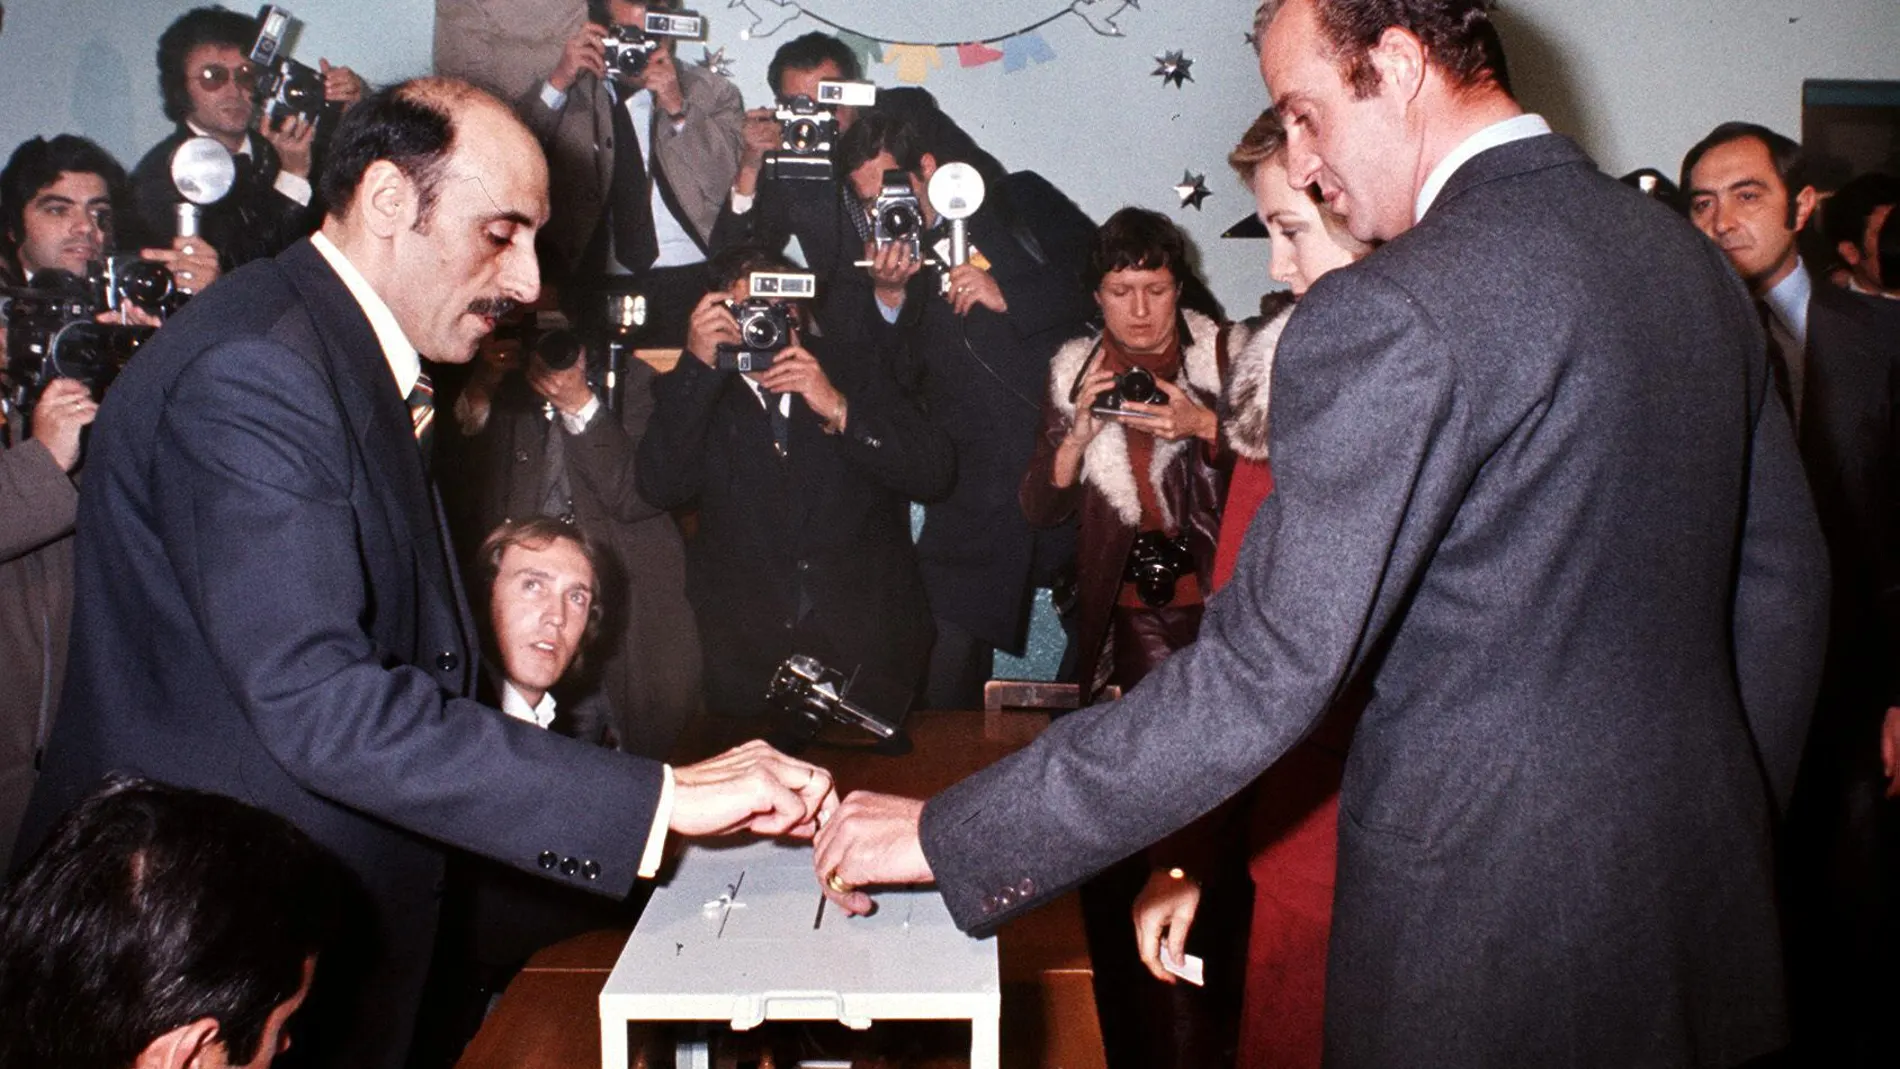 MD-04 El próximo miercoles, día 22 de noviembre, se cumple el 25 aniversario de la proclamación de Don Juan Carlos I como Rey de España. En la foto de archivo (15-12-76) Don Juan Carlos votando en el Referéndum de la Ley para la Reforma Política. EFE-ARCHIVO/OLEGARIO PEREZ DE CASTRO